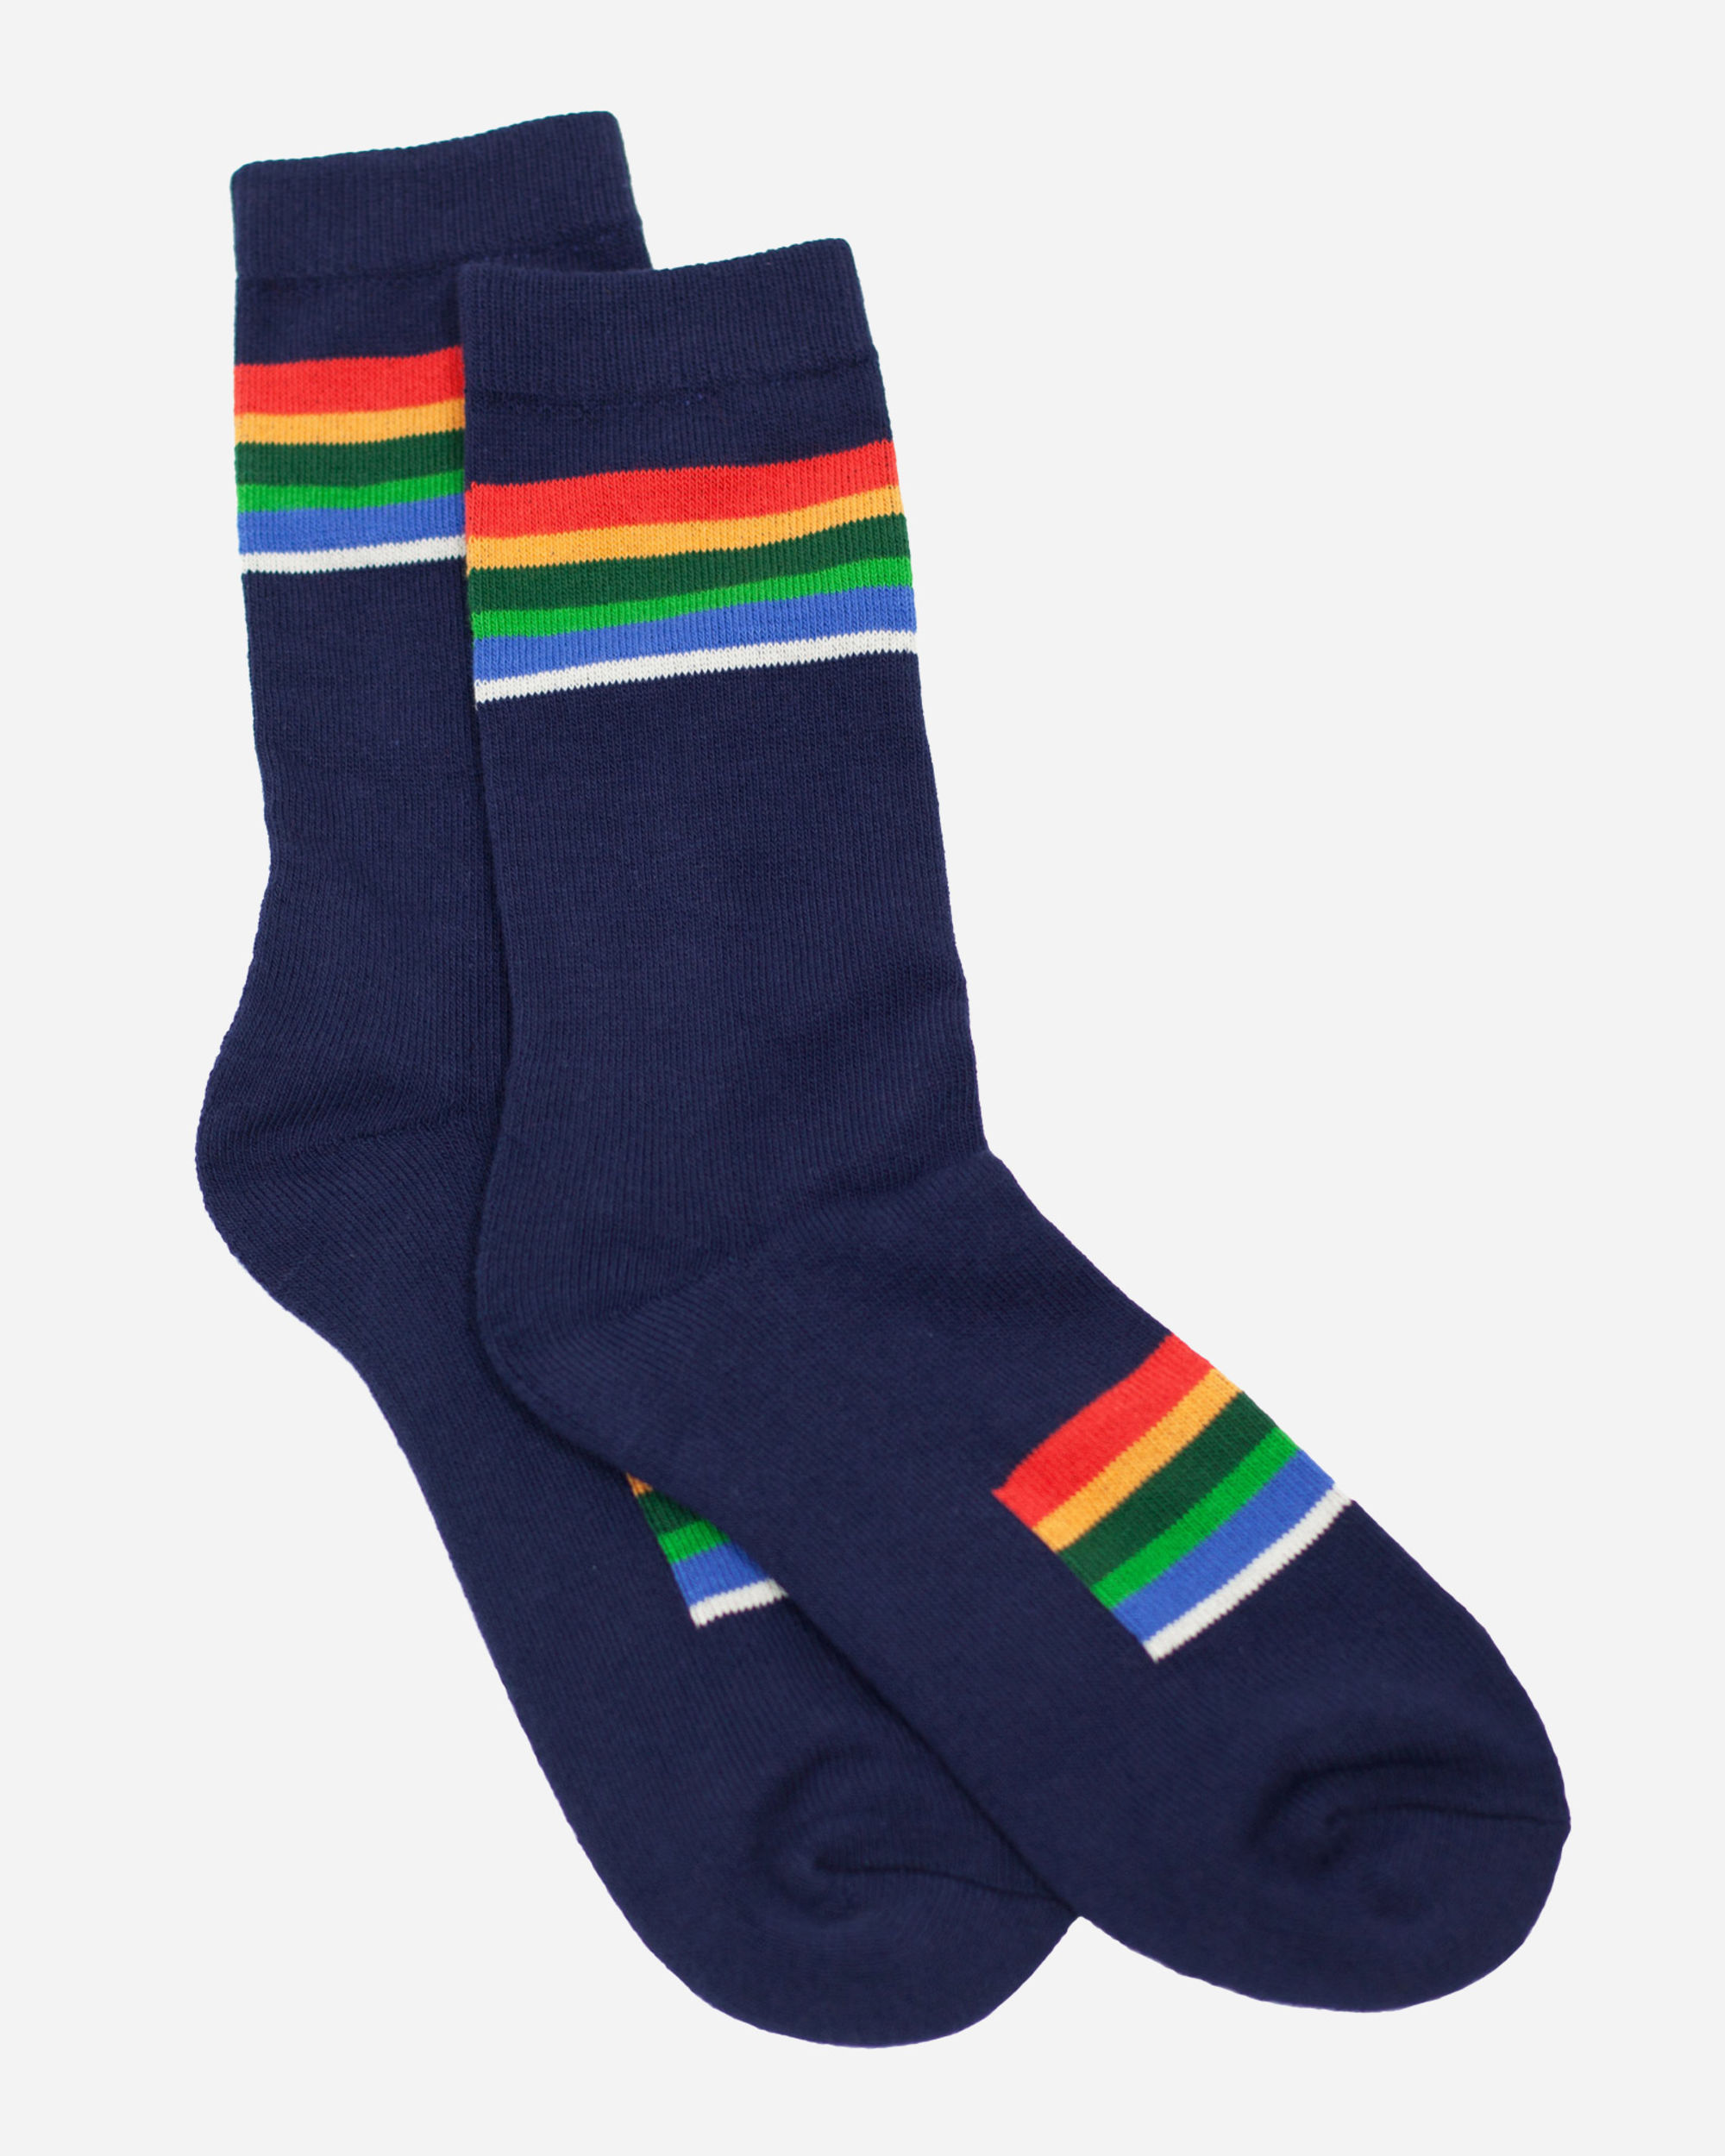 Louis Vuitton 3 Socks Set Multicolor Cotton. Size 6 Months